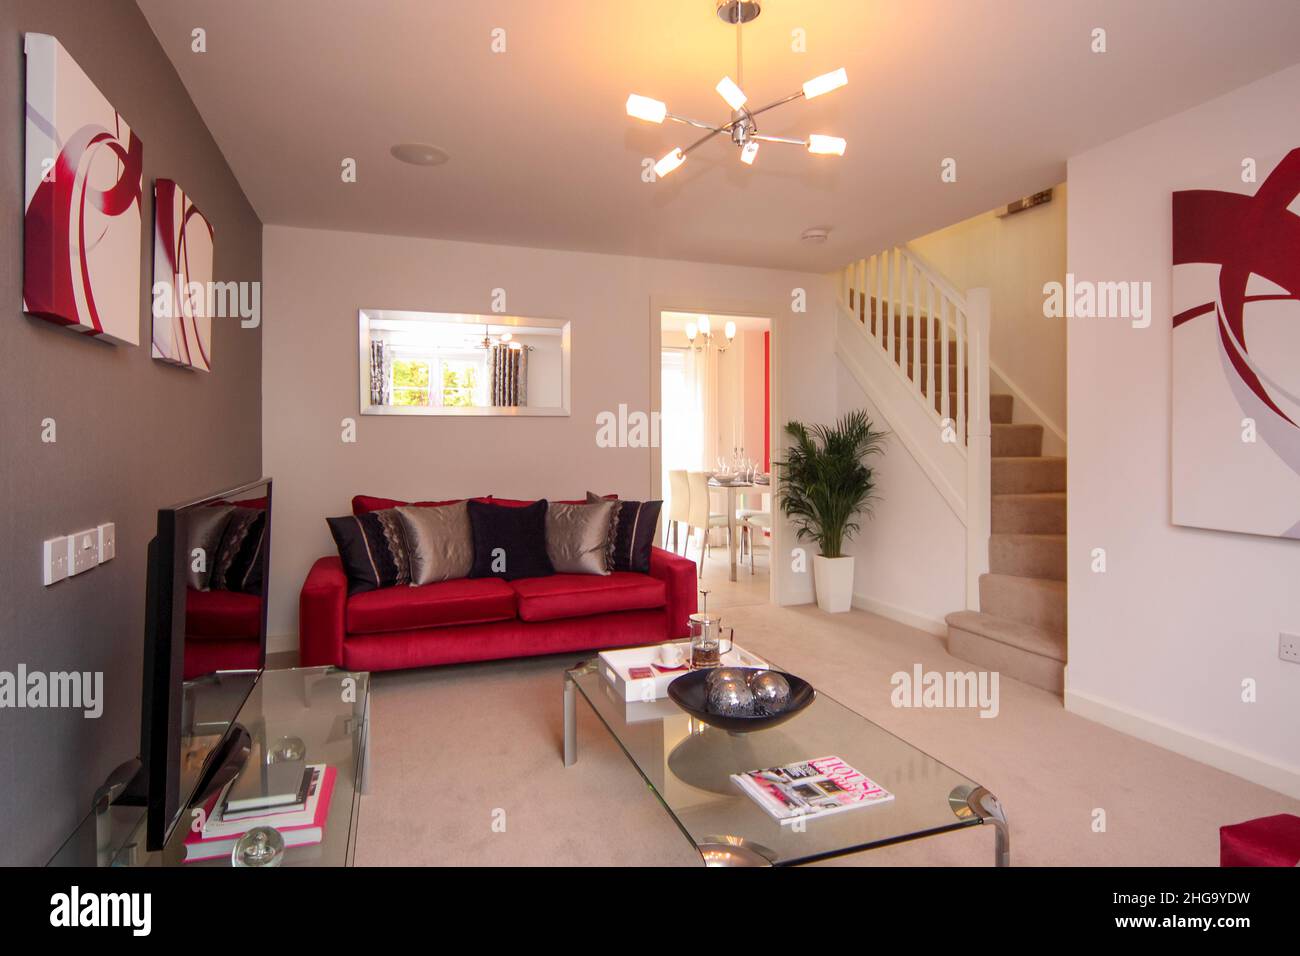 Salon, escalier au deuxième étage, couleurs rouge foncé, canapé, table basse en verre Banque D'Images